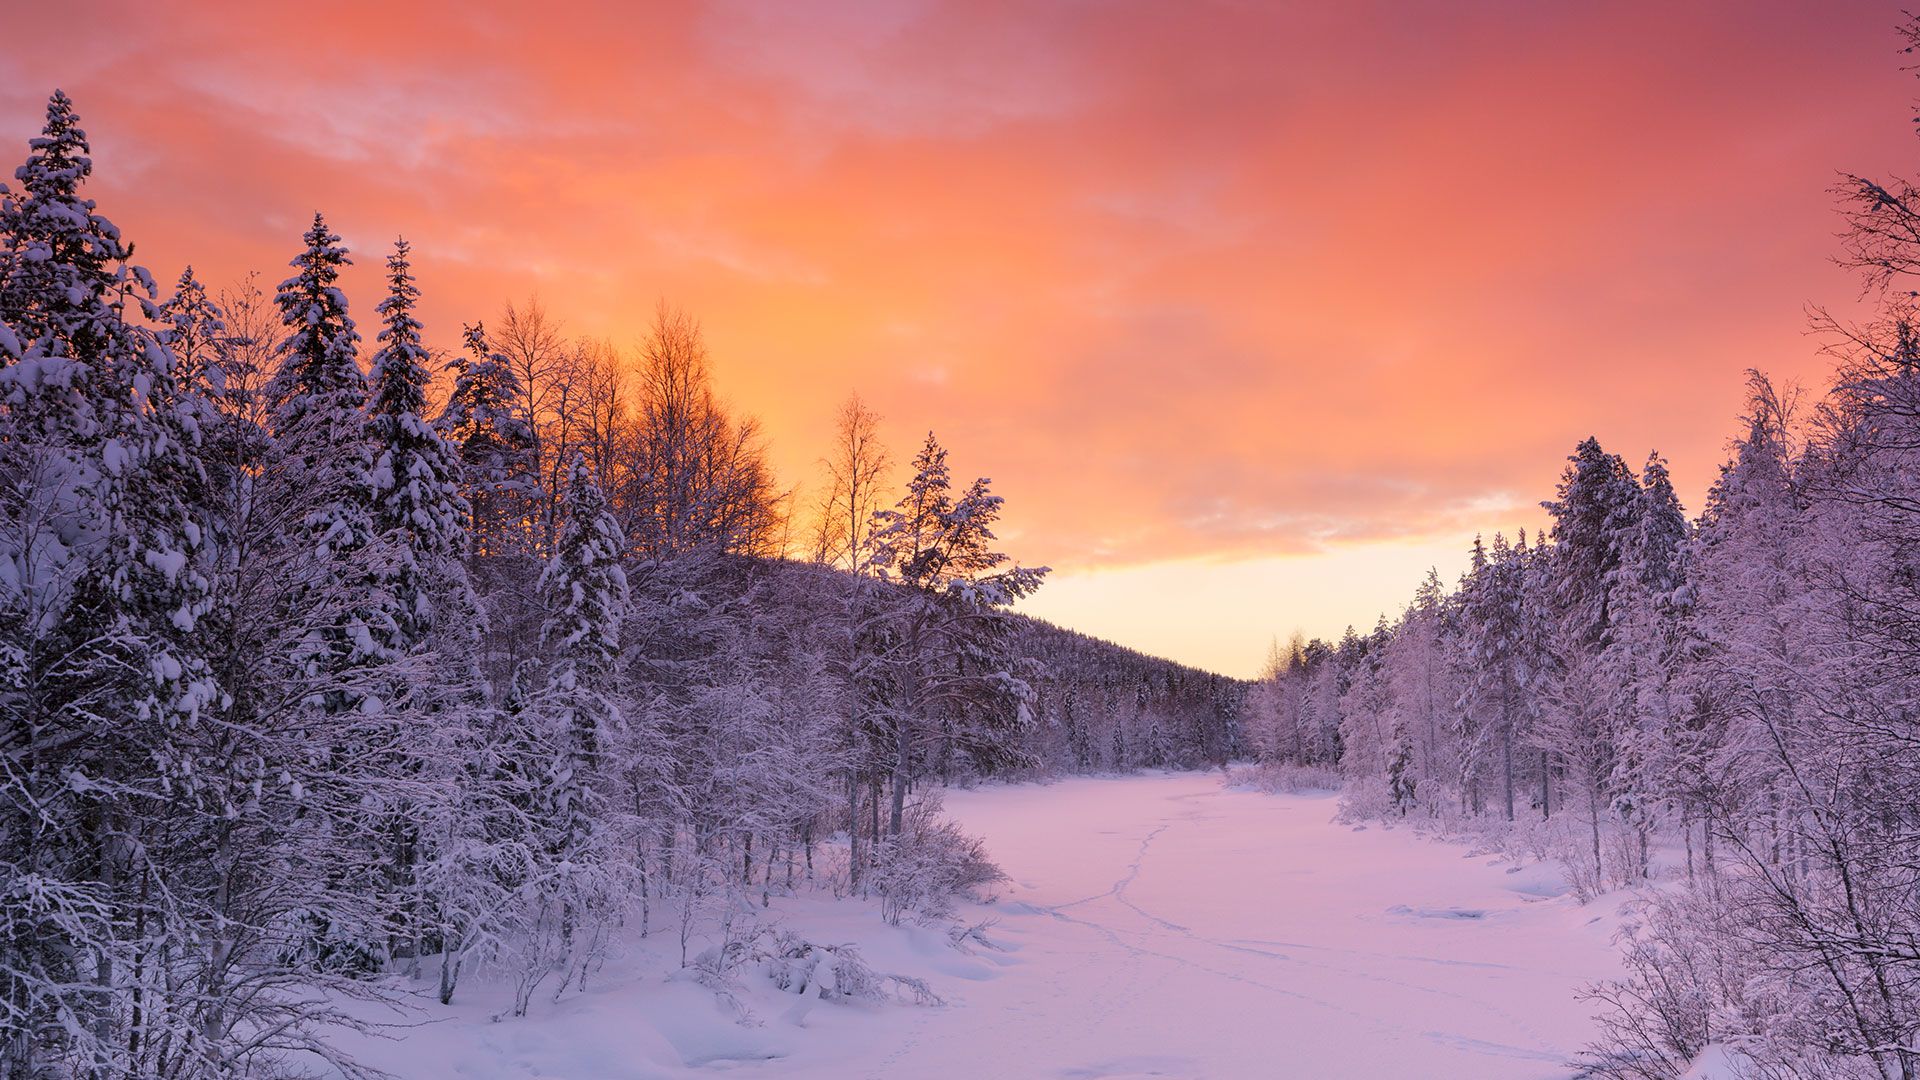 Winter in Finland Suomessa (Lapland) Wallpaper